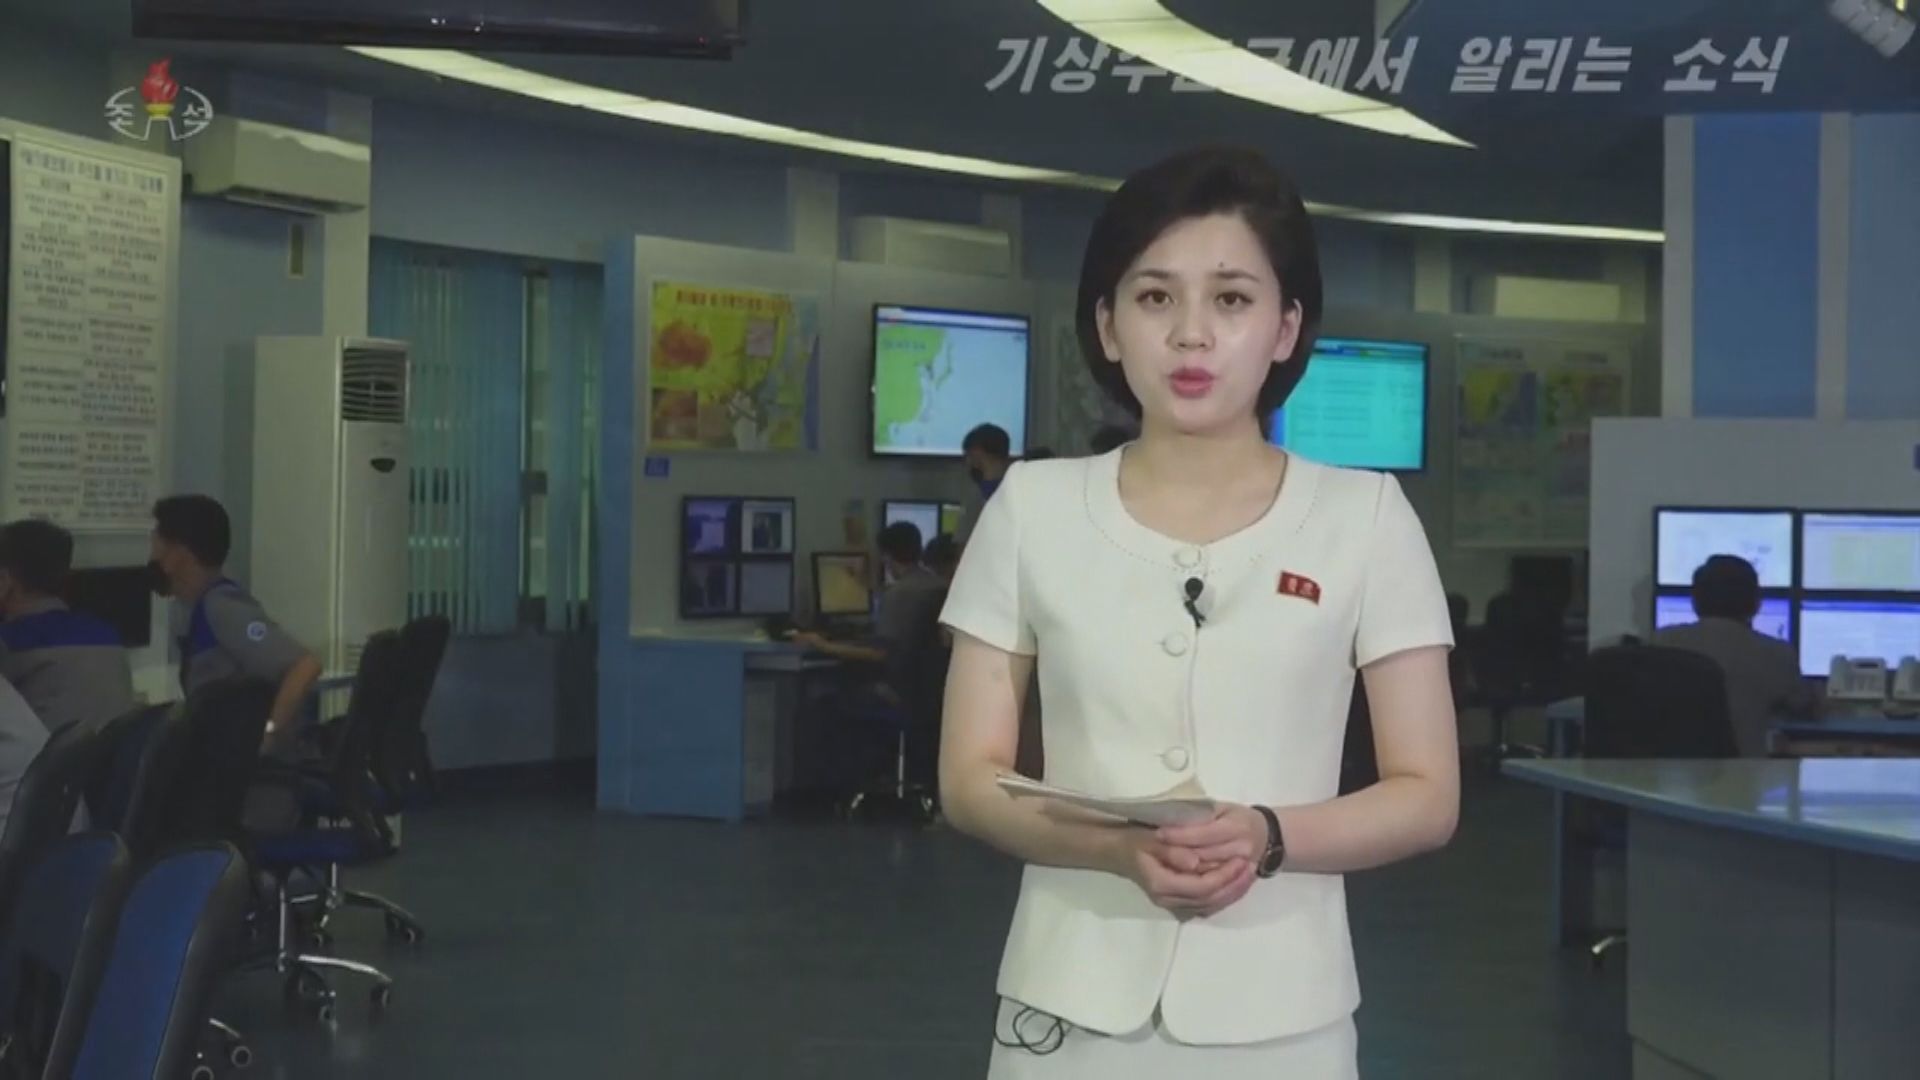 北韓電視台罕有在節目間插播風暴消息